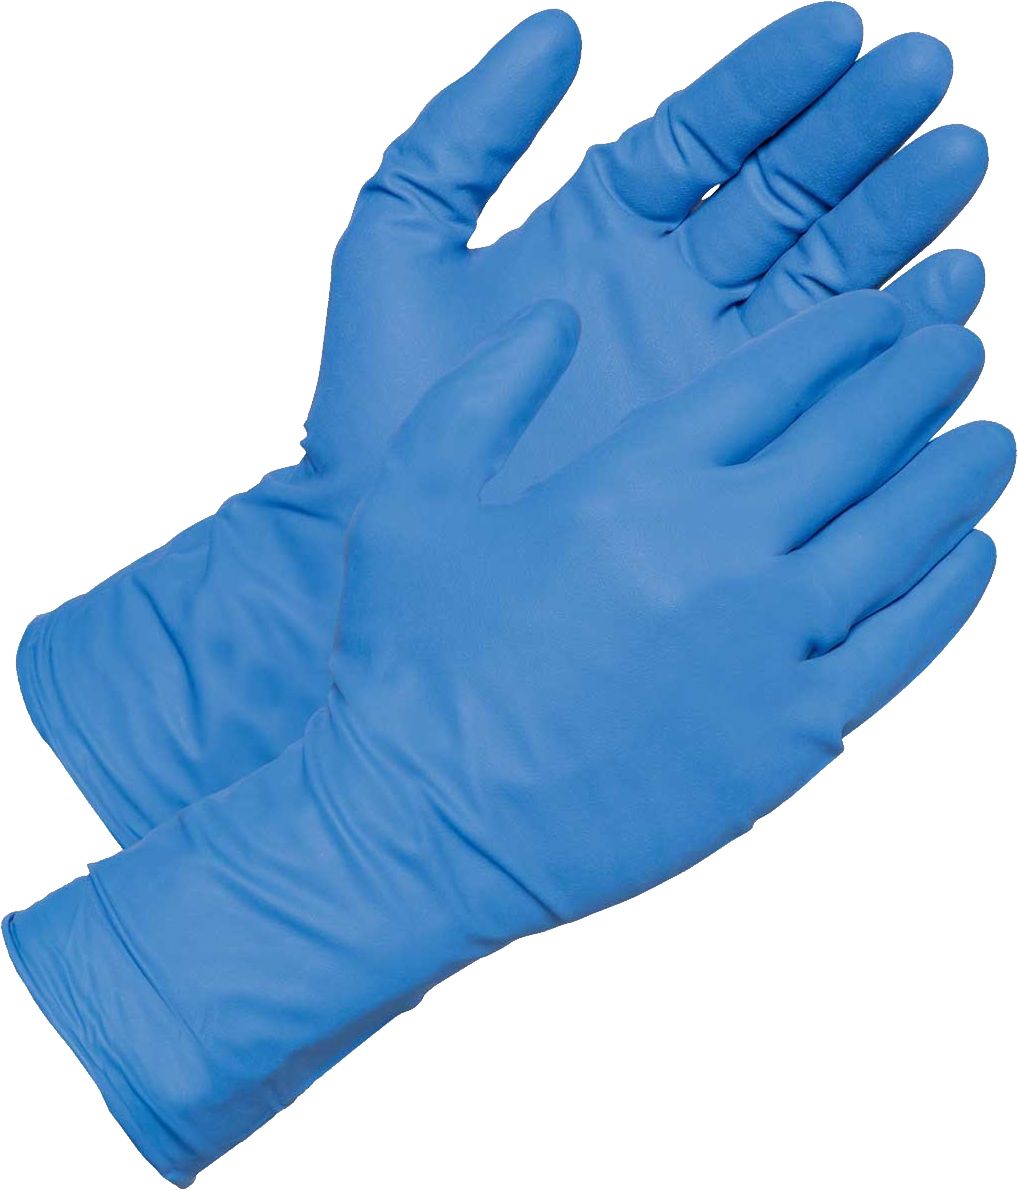 Medical gloves PNG    图片编号:81624